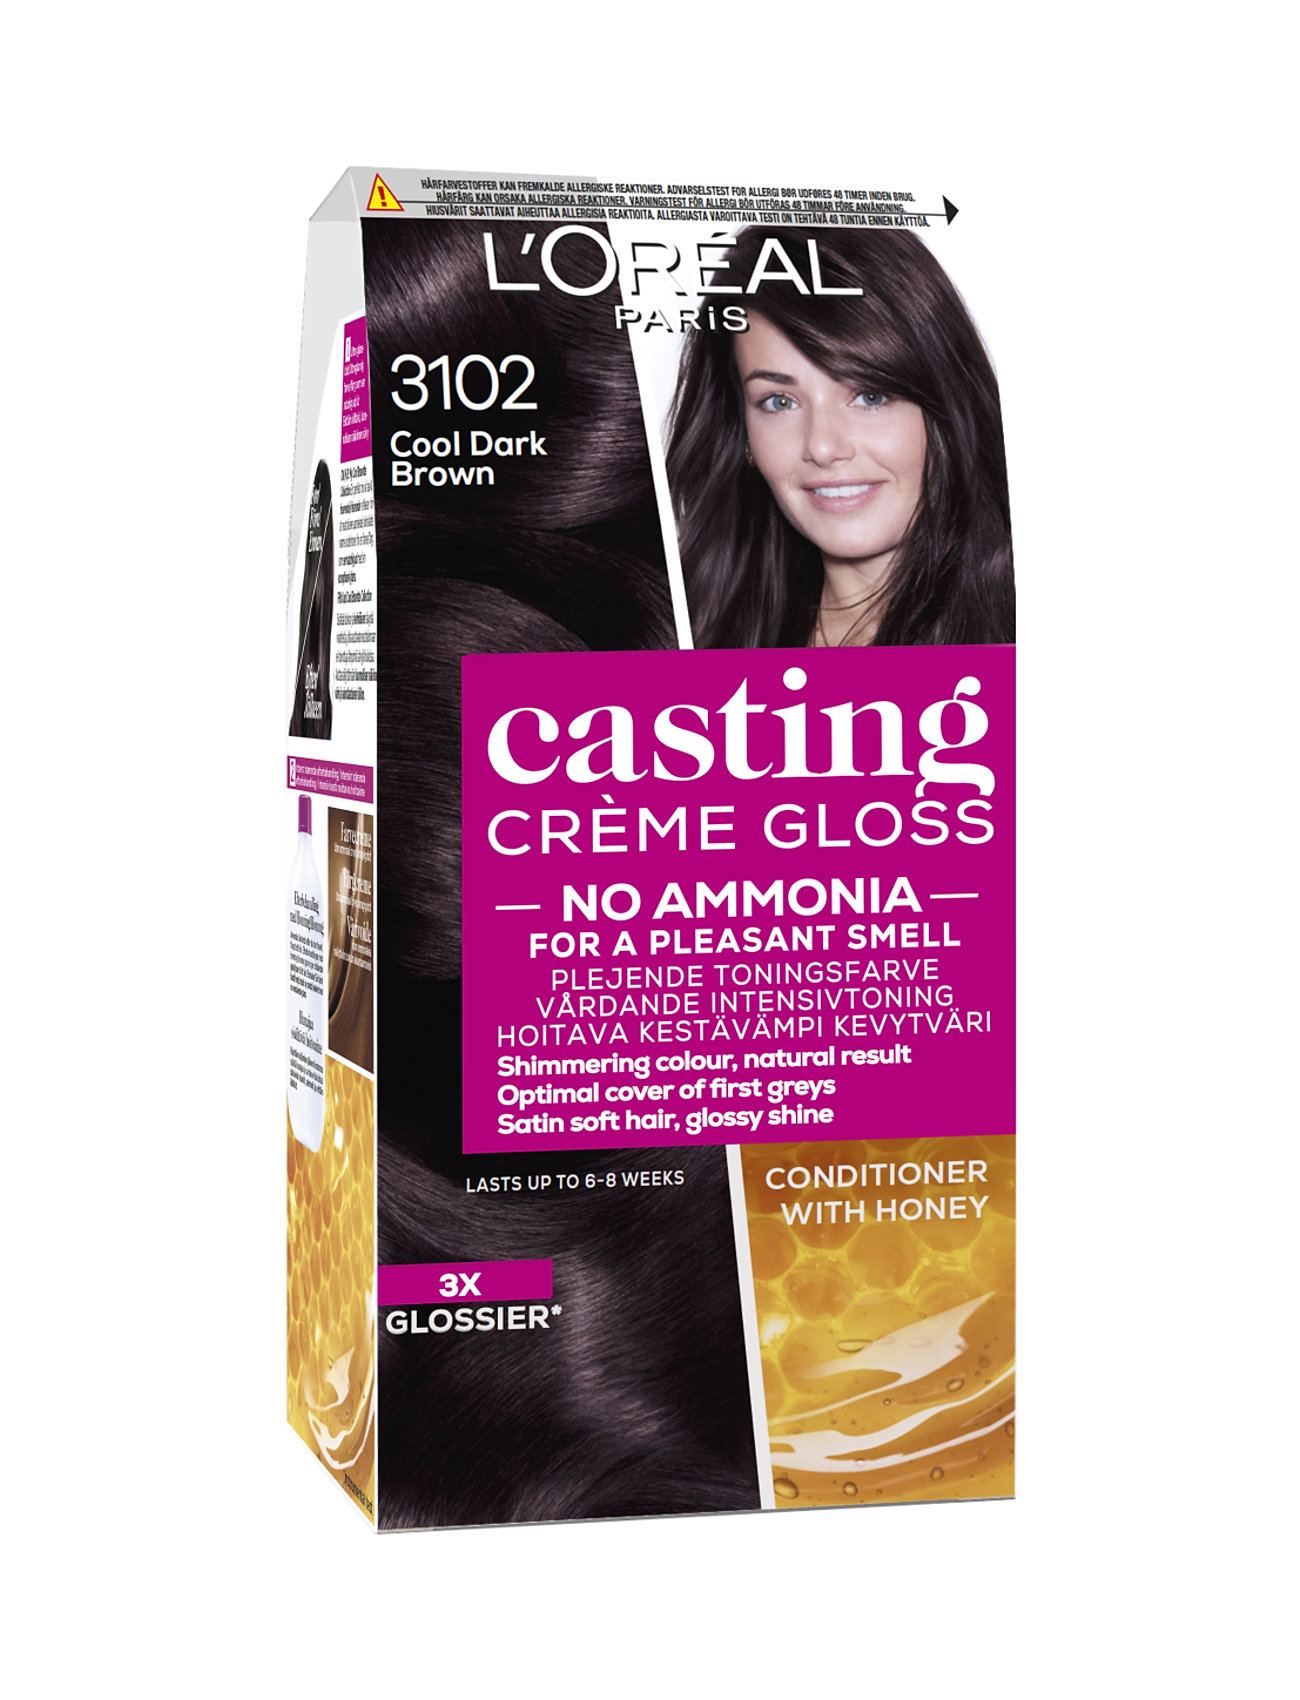 L'oréal Paris Casting Creme Gloss 310 Cool Dark Brown Beauty Women Hair Care Color Treatments Nude L'Oréal Paris